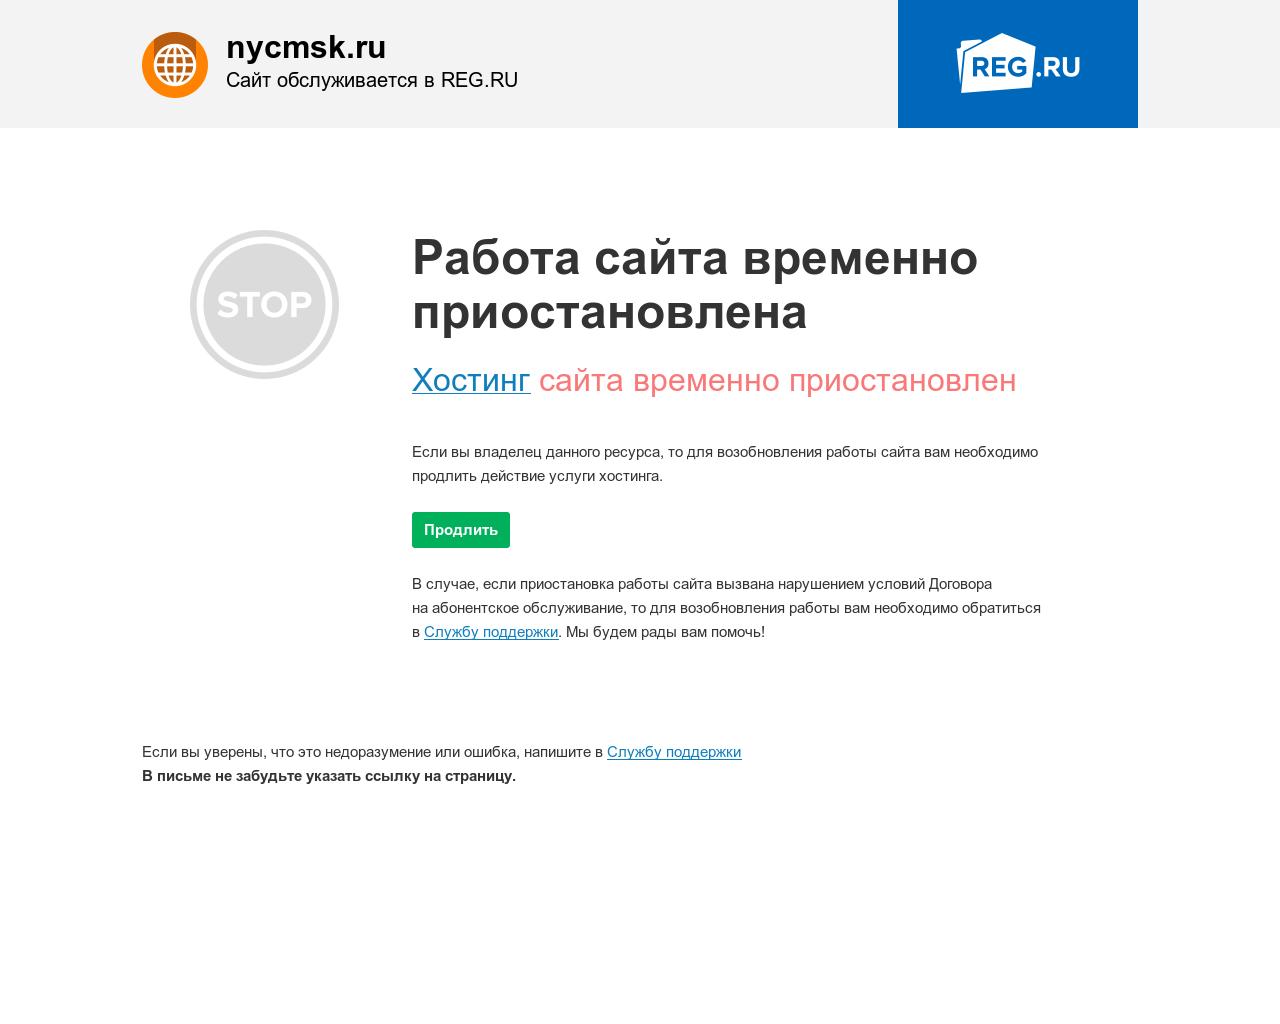 Изображение сайта nycmsk.ru в разрешении 1280x1024